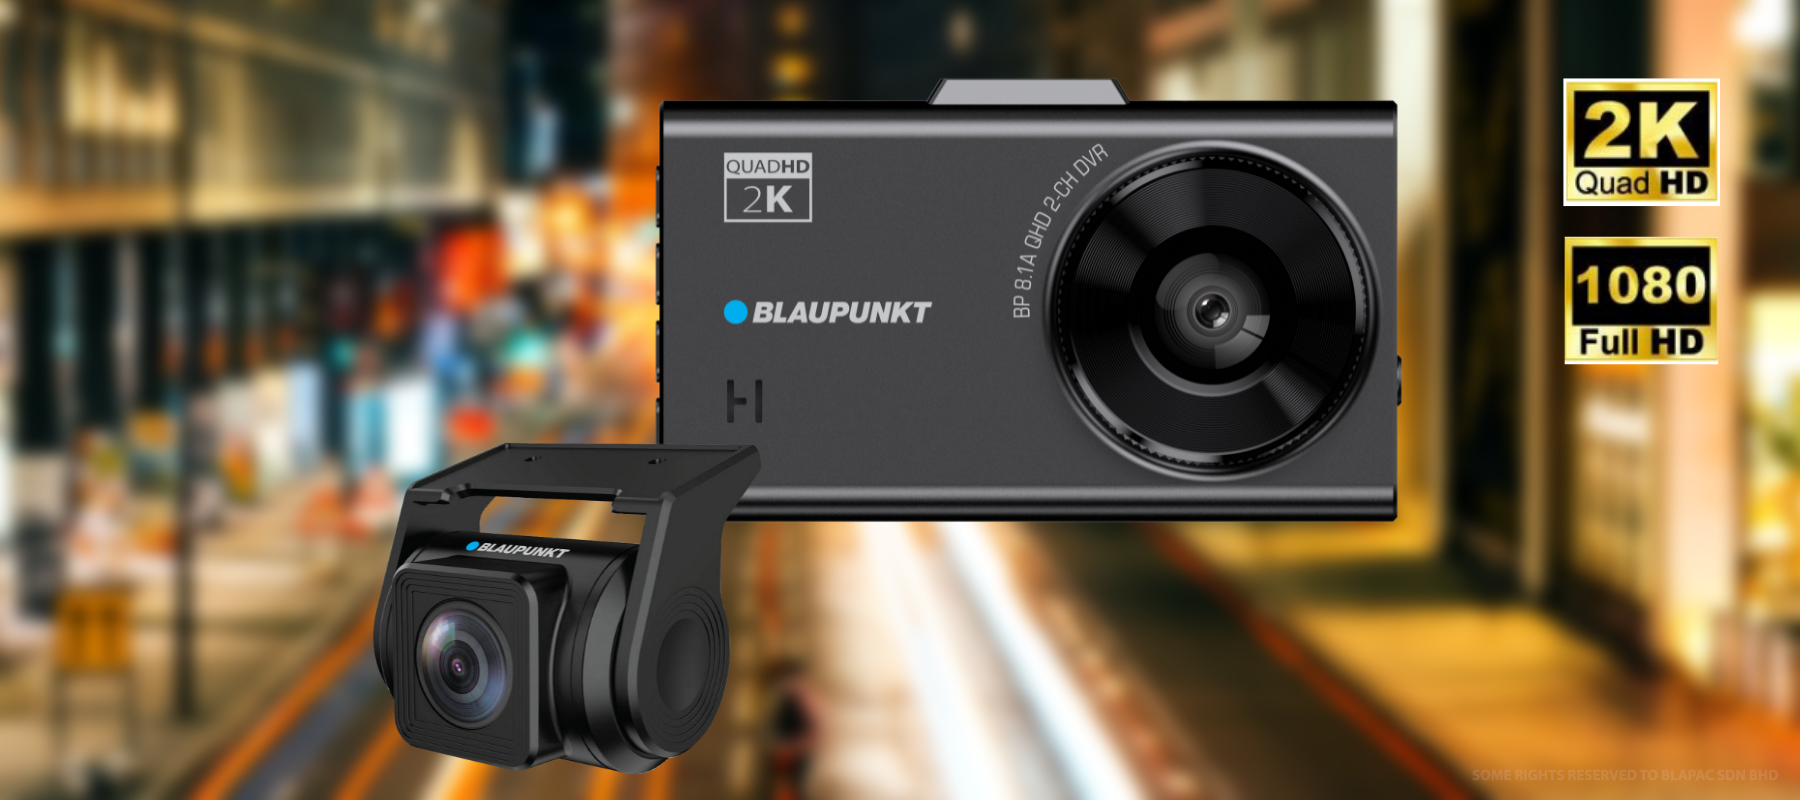 Blaupunkt Digital Video Recorder BP 8.1a